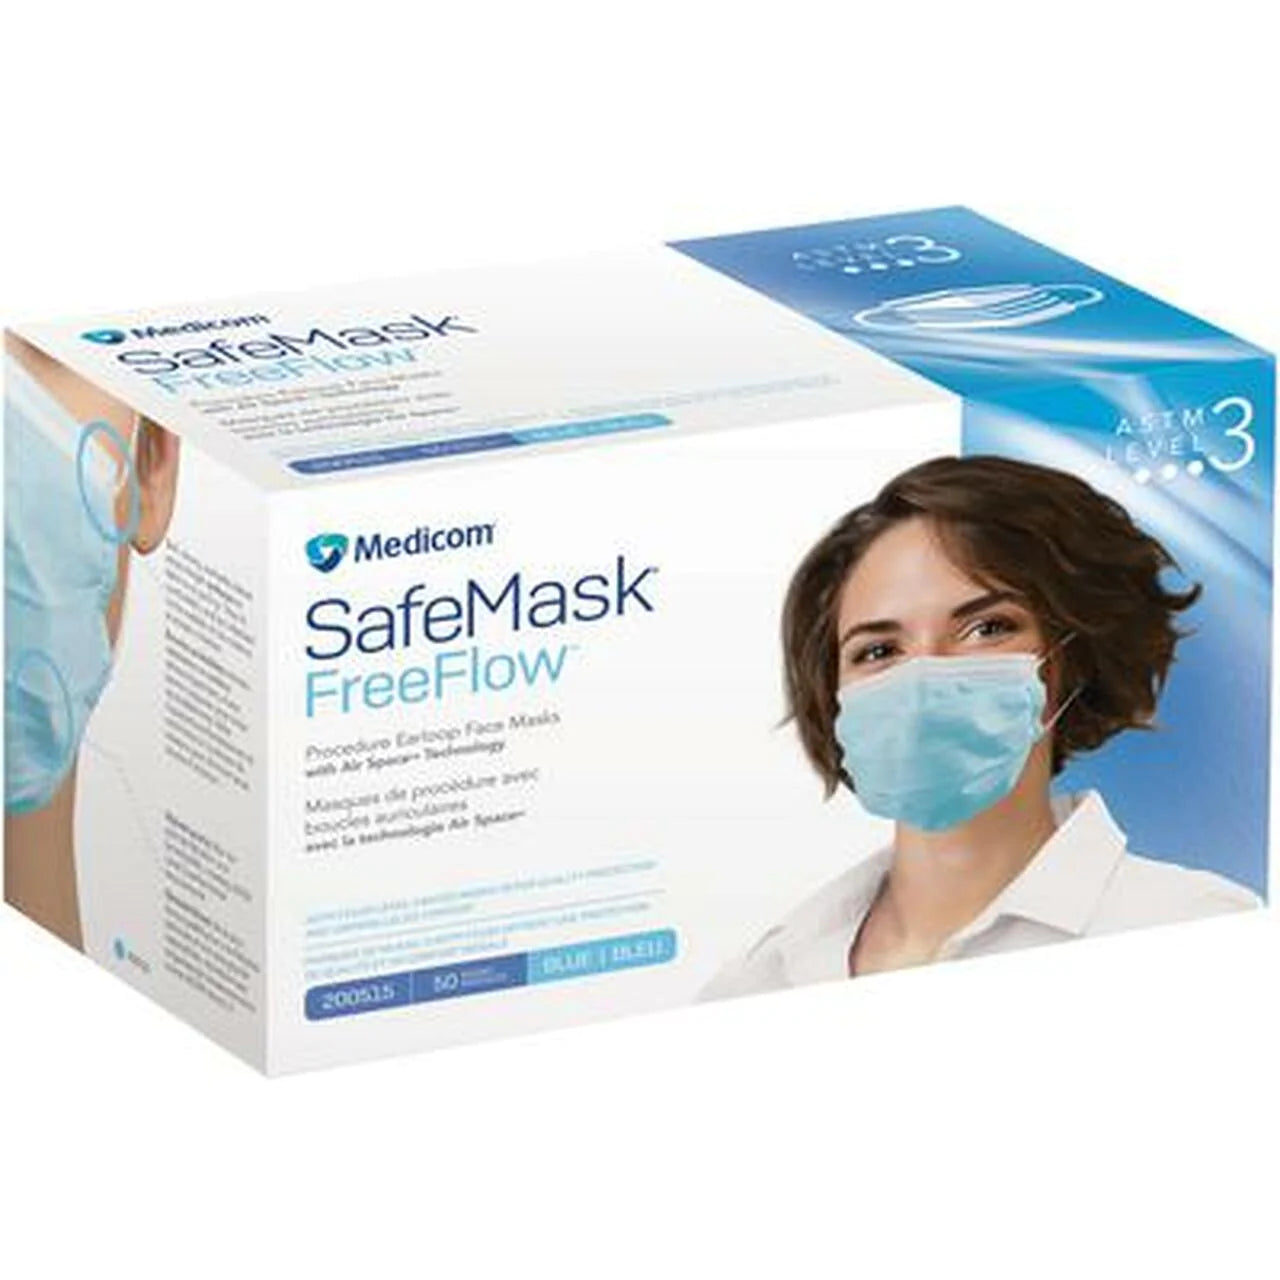 Medicom, Safe Mask, FreeFlow, Level 3, Earloop, Blue, 50/Pkg #200515